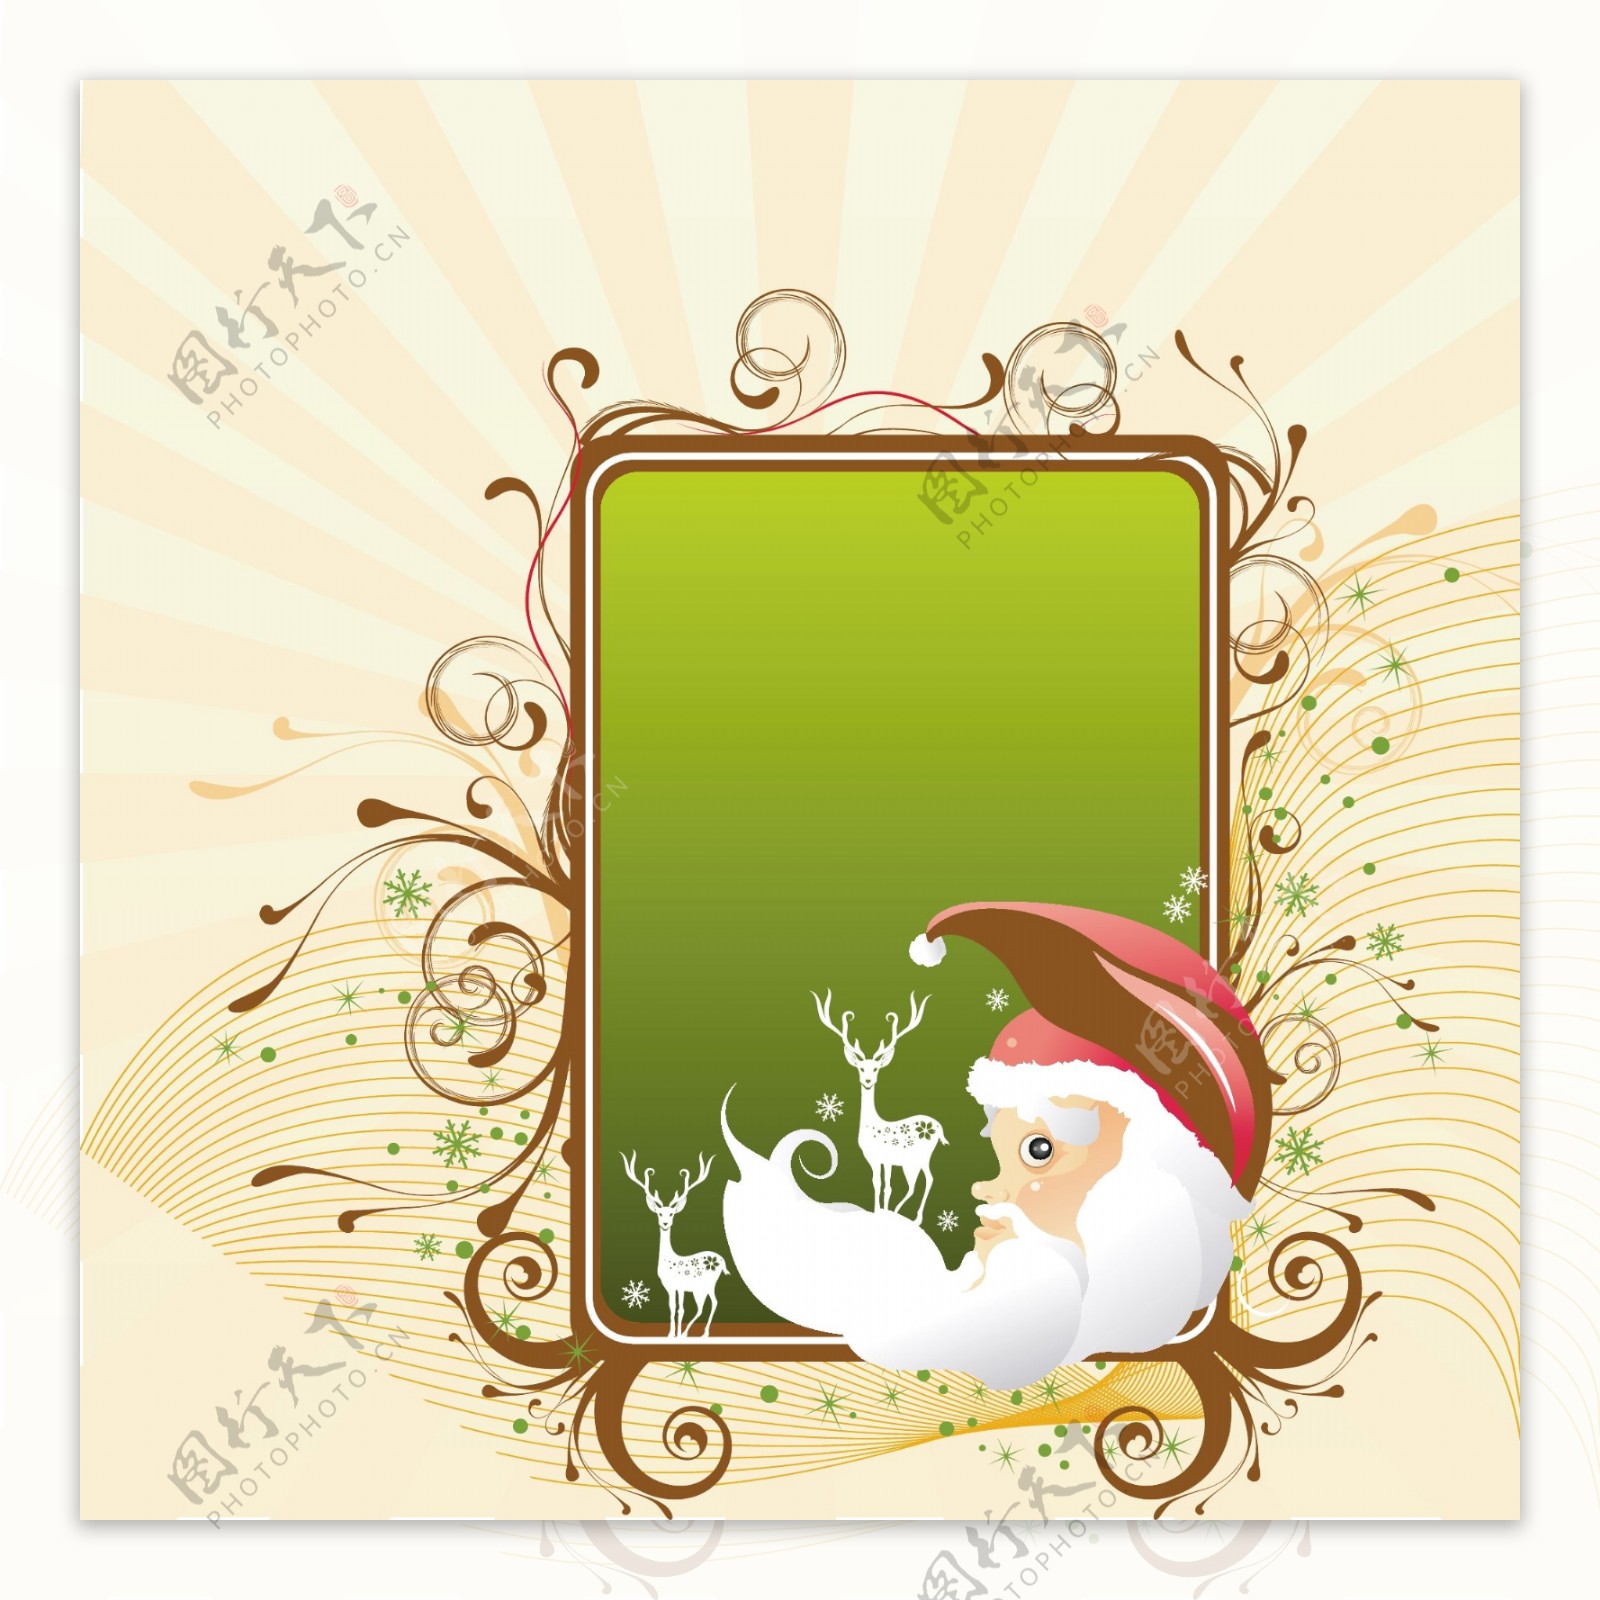 2009圣诞节矢量素材圣诞老人矢量底纹韩国矢量纹理背景